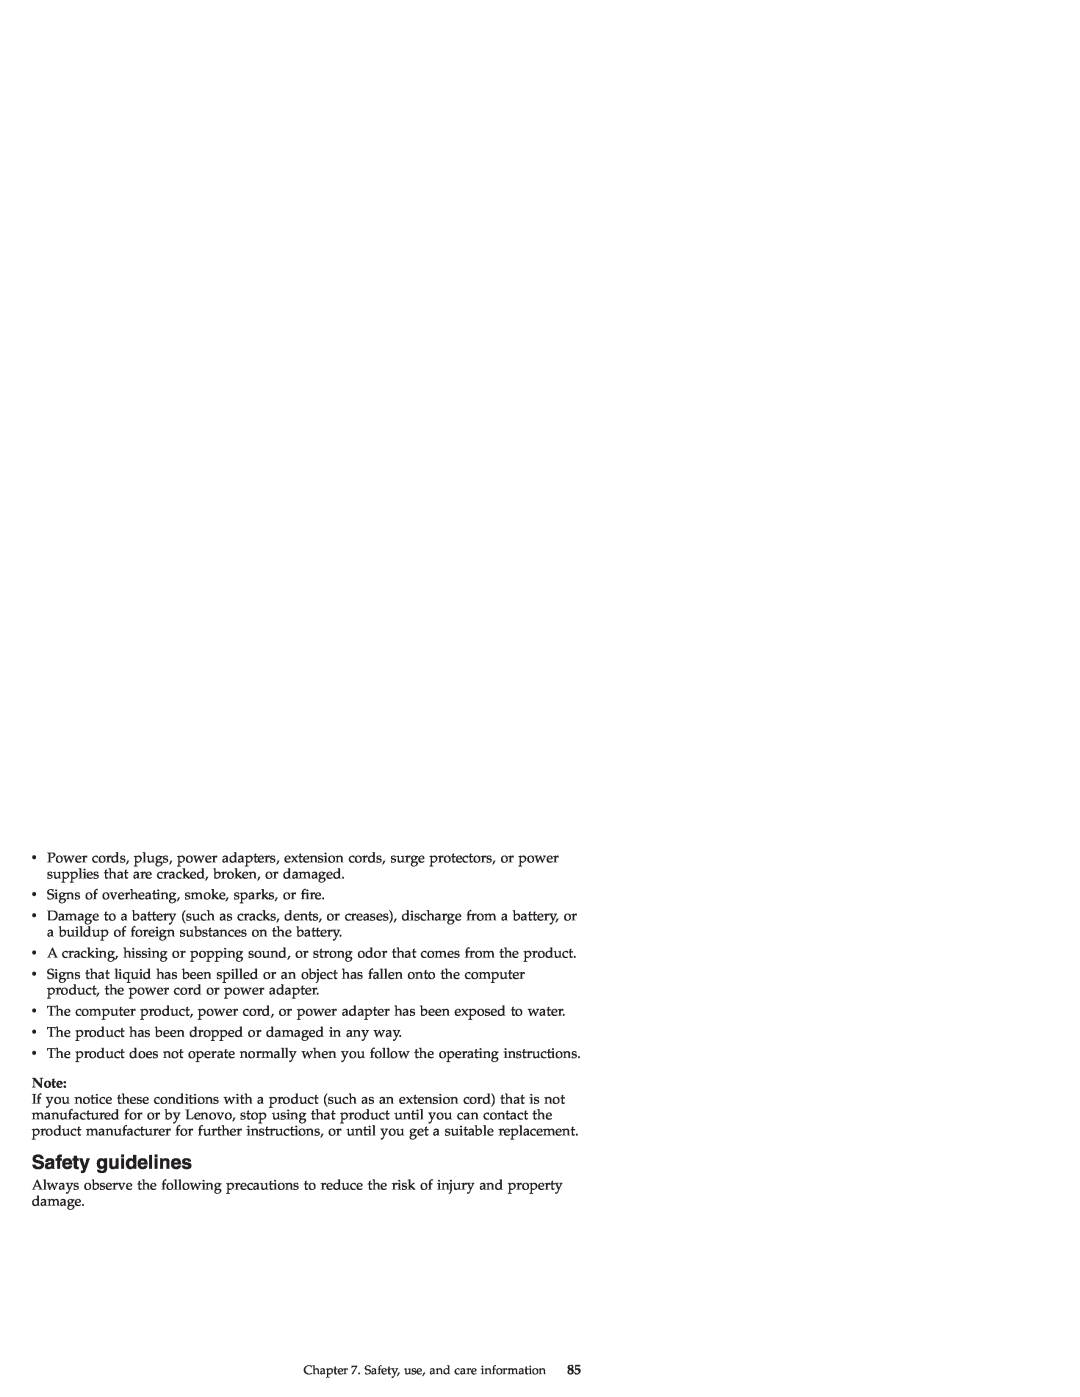 Lenovo S9E, S10E manual Safety guidelines 